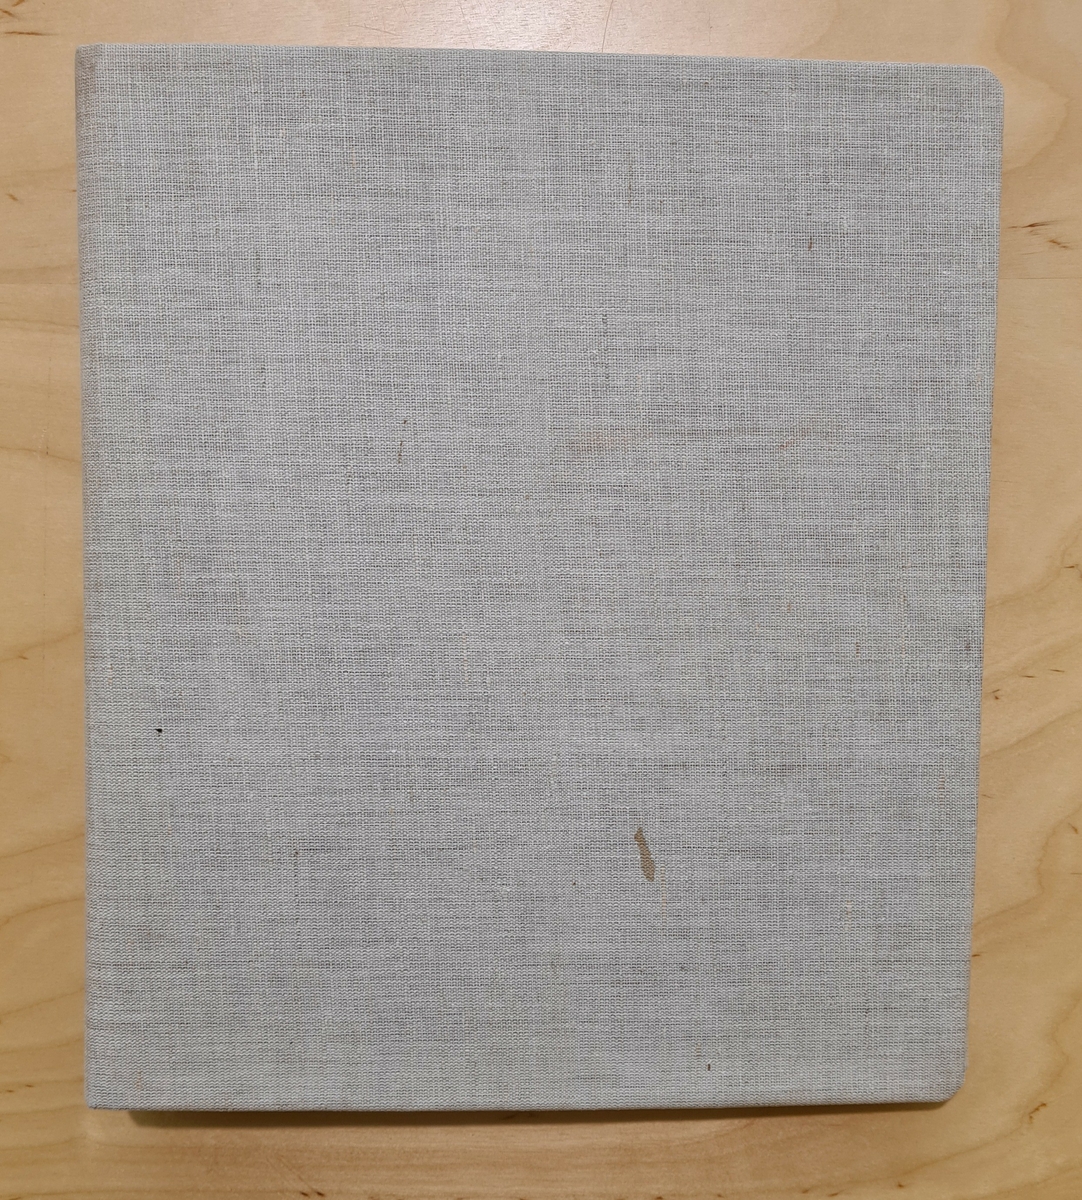 VM29655:7 Häfte från Textil-materiallära
En ringpärm med anteckningar från Textil och materiallära från Johanna Brunssons vävskola. Pärmen har senare klätts med grå textilie.

En samling vävböcker. Böckerna innehåller vävlära, mönster, teckningar samt vävprover.